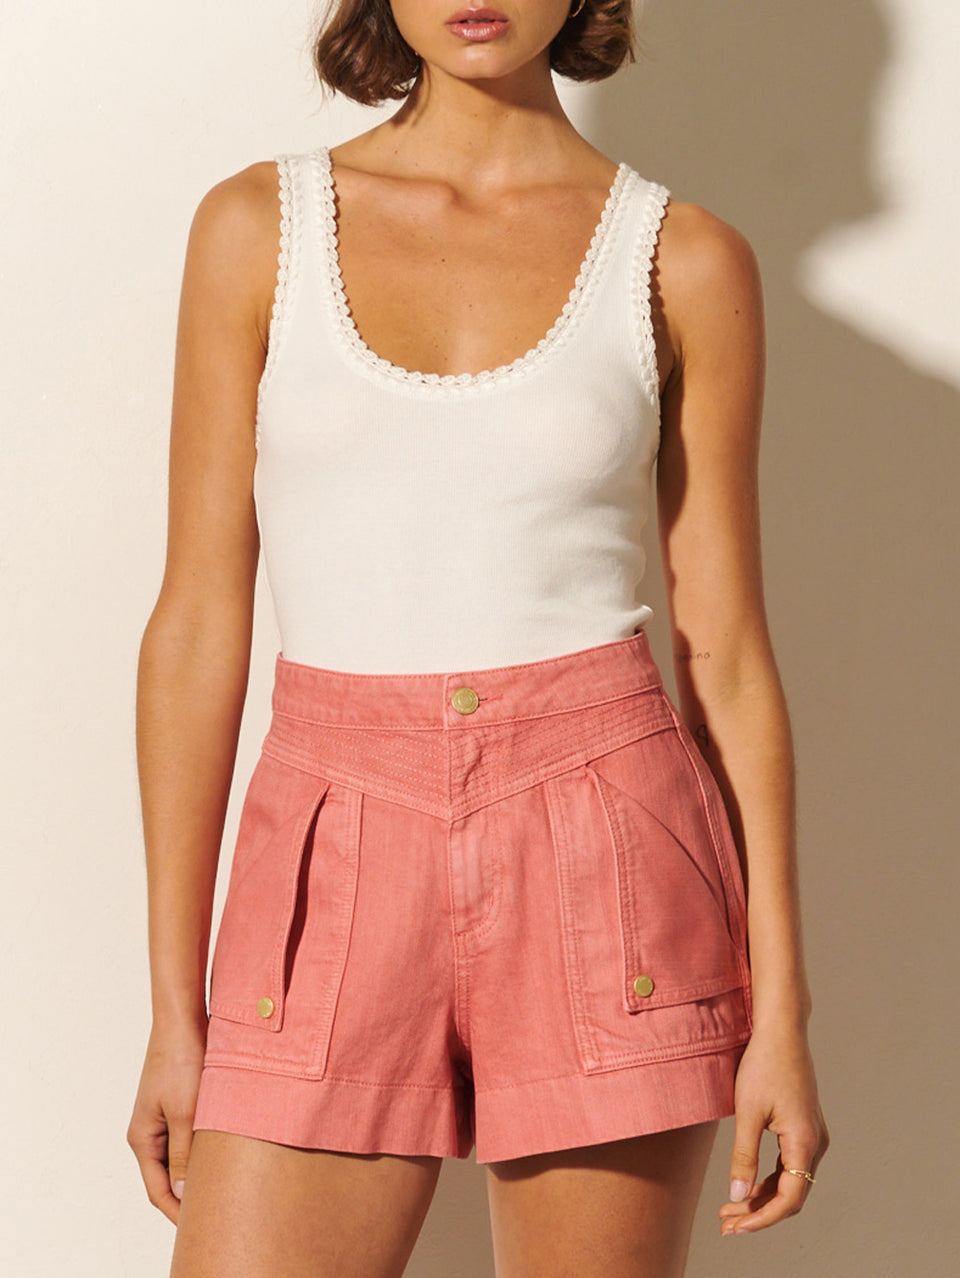 Celene Short KIVARI | Model wears pink denim shorts close up